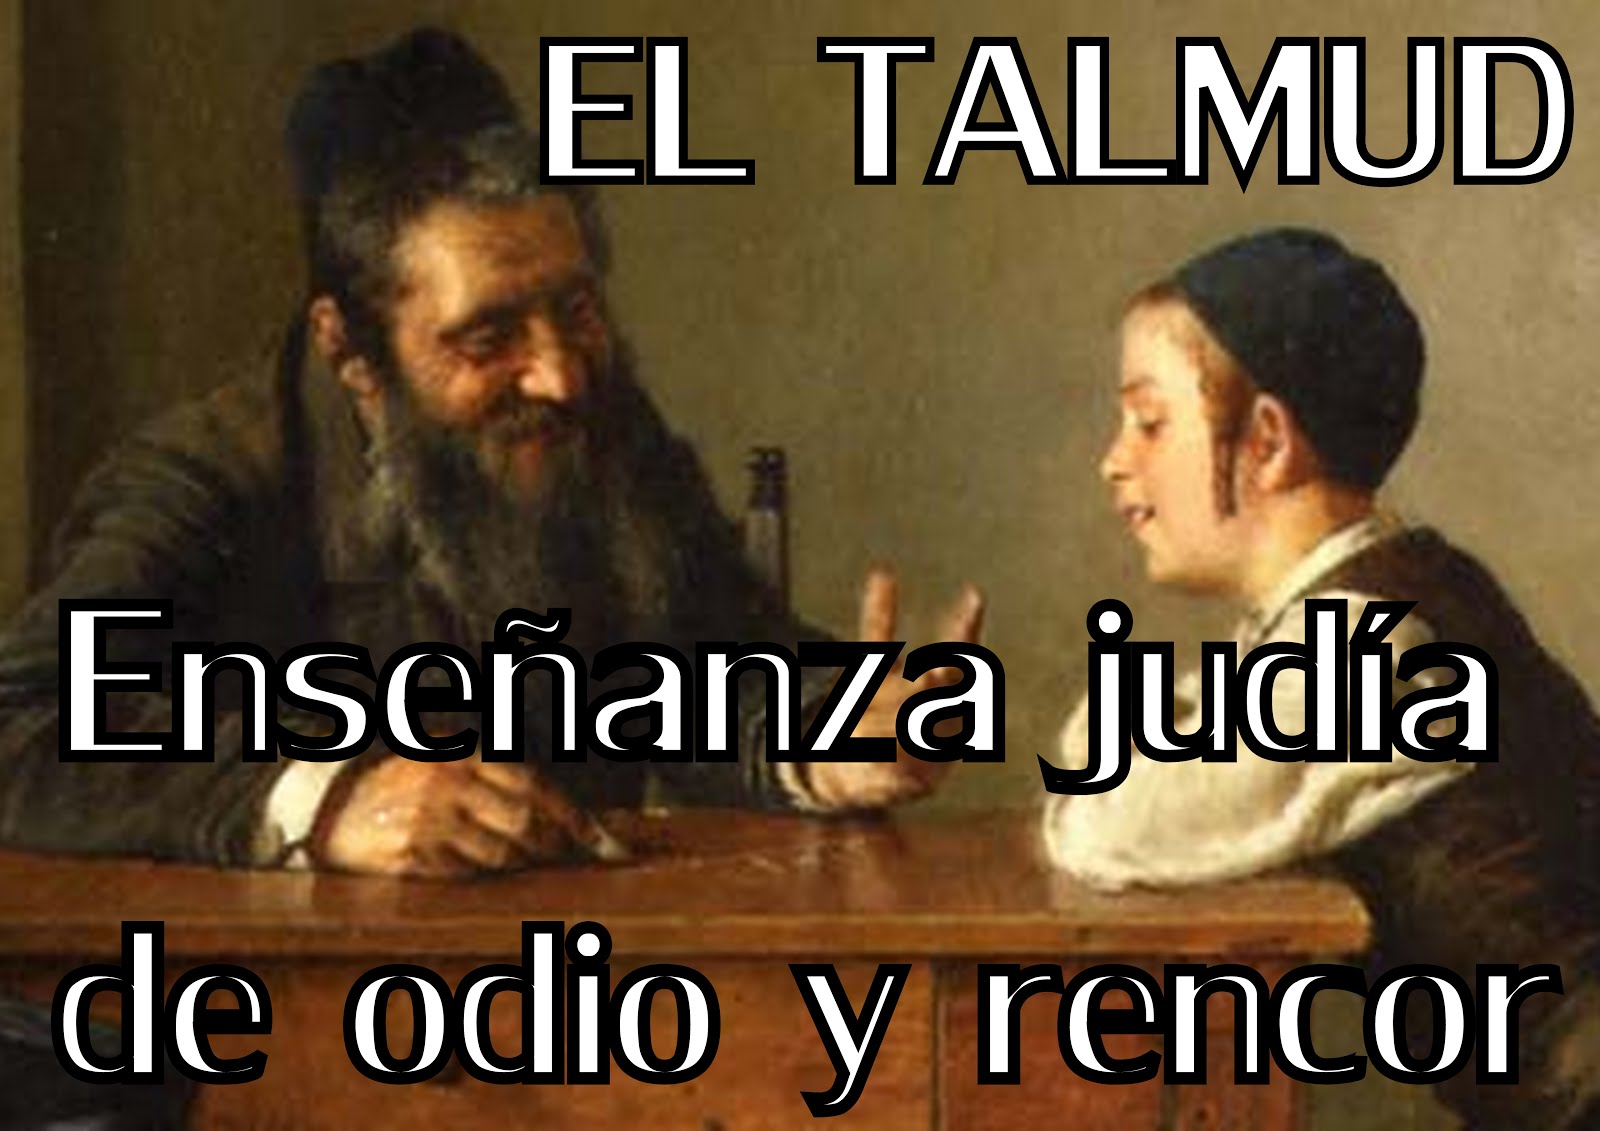 EL TALMUD; ENSEÑANSA JUDÍO SIONISTA MASONICA